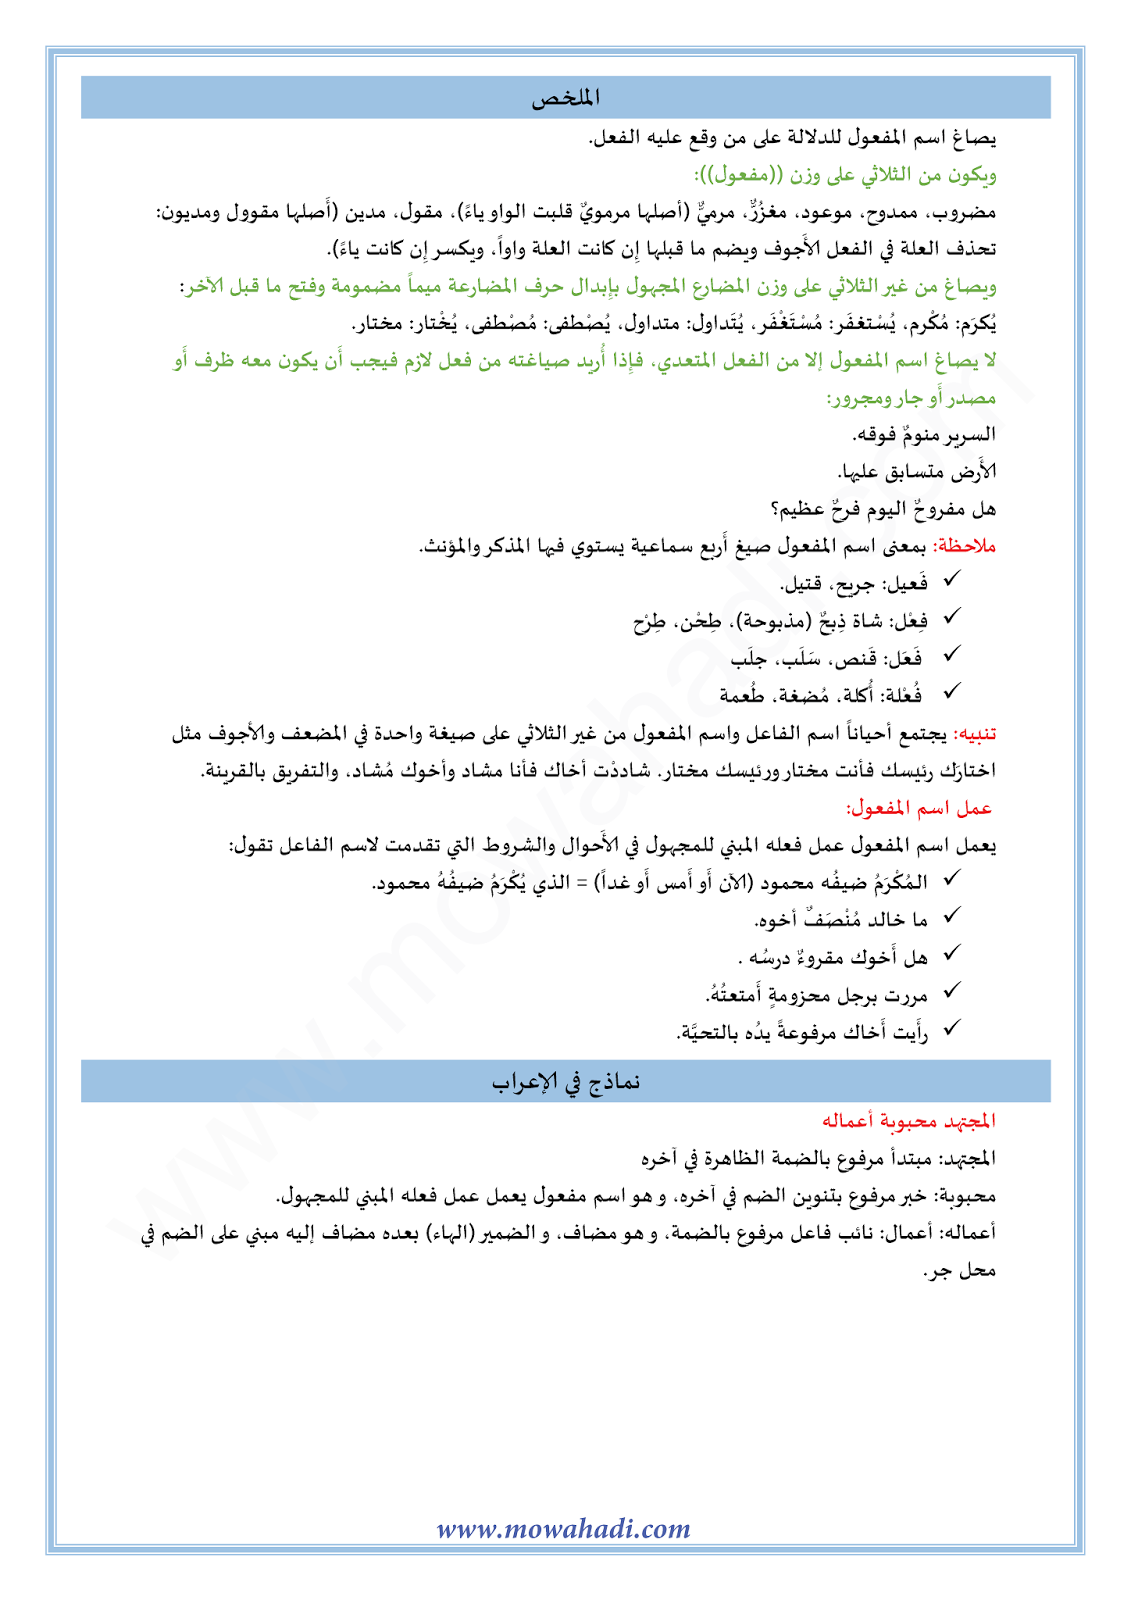 الدرس اللغوي اسم المفعول و عمله للسنة الثالثة اعدادي في مادة اللغة العربية 2-cours-dars-loghawi3_002